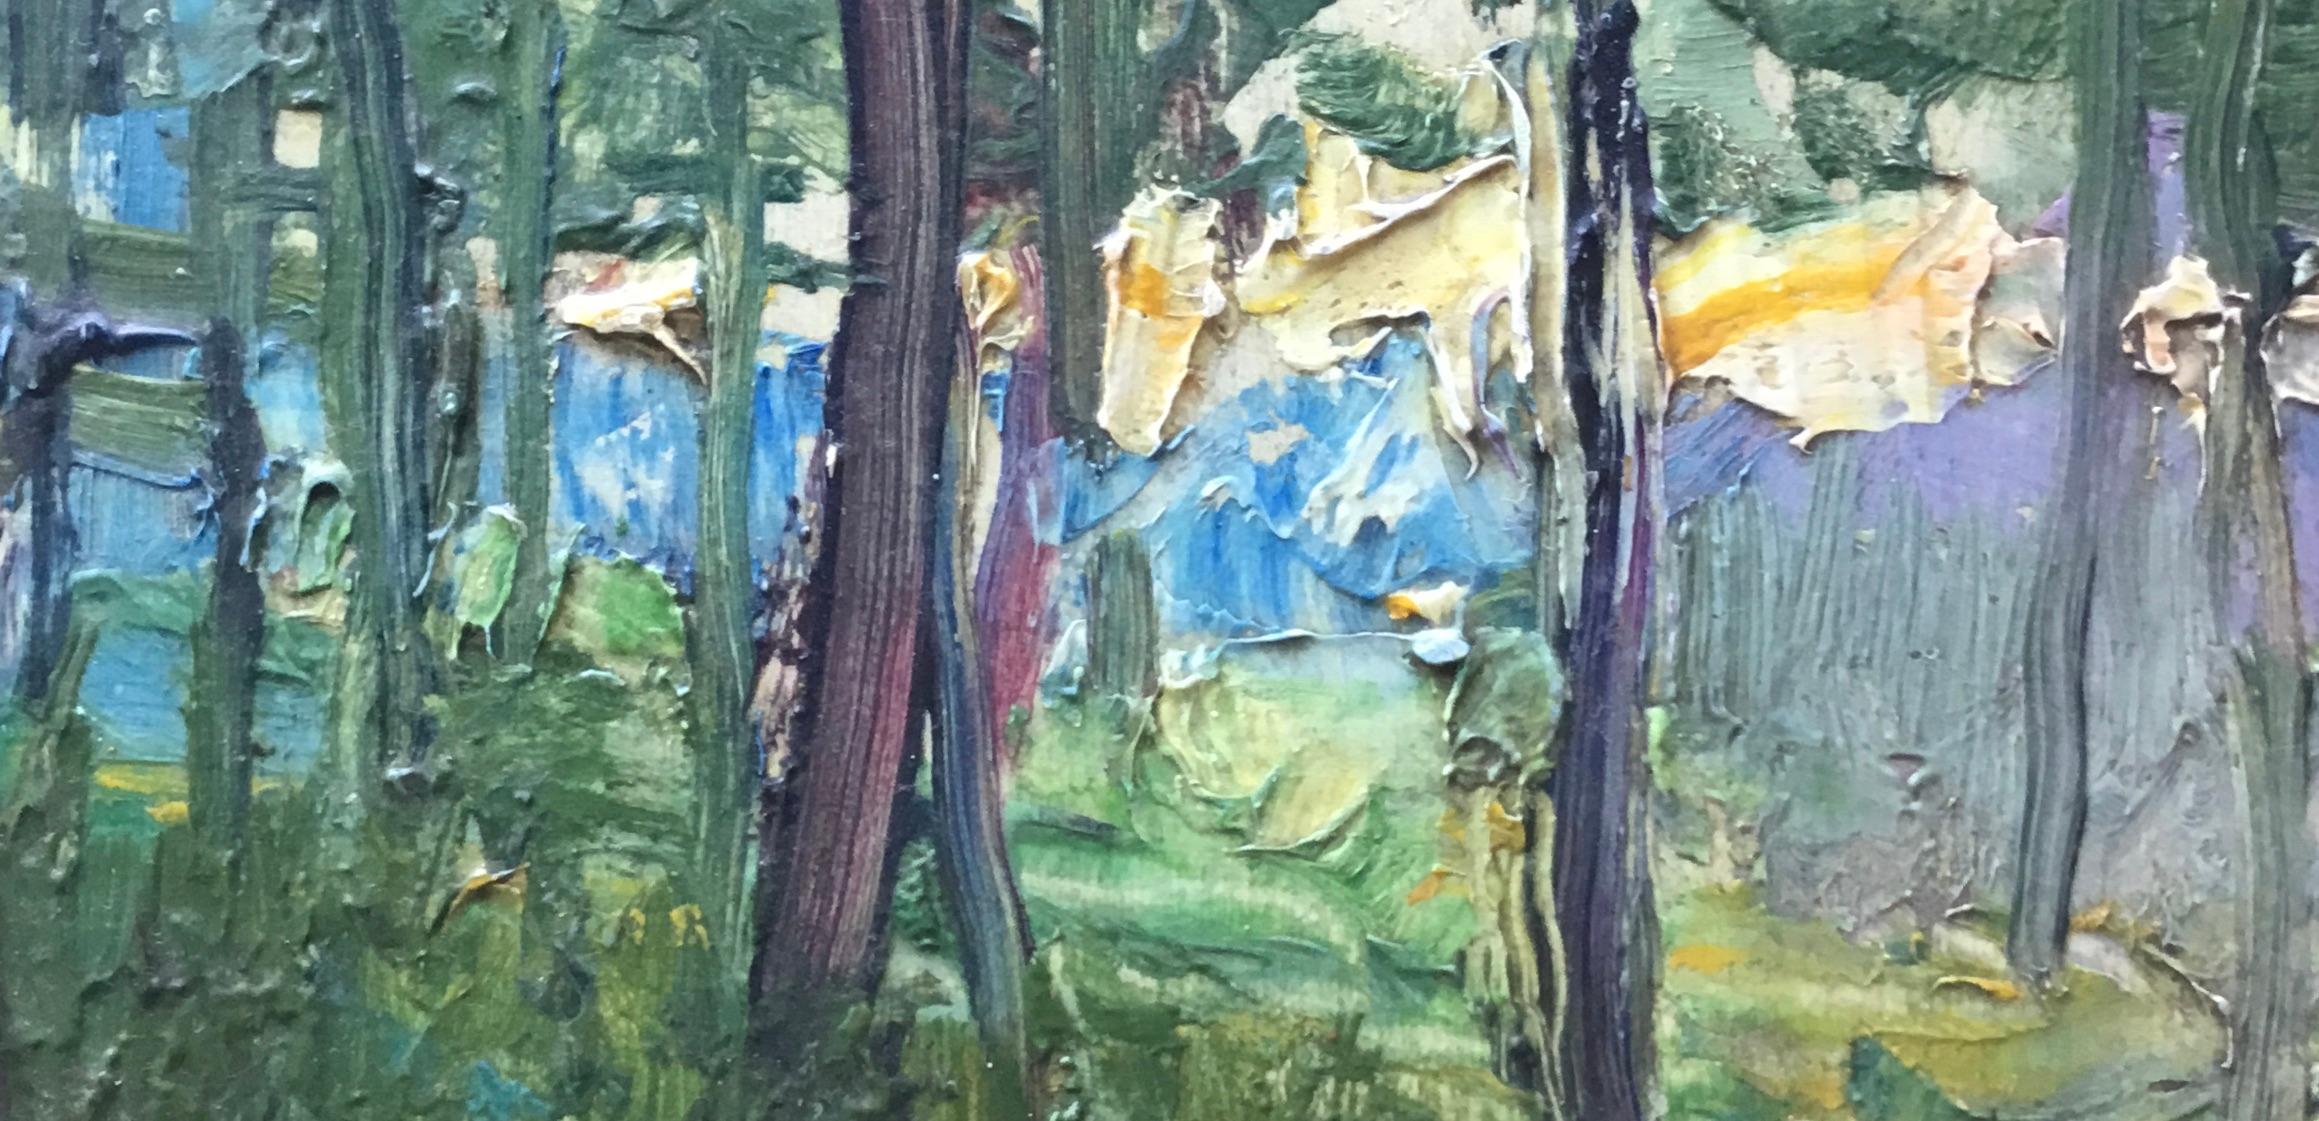 Jean-Franck Baudoin (1870-1961) est l'un des derniers grands peintres post-impressionnistes français. Cet ensemble d'œuvres témoigne de la vision simple du monde de Baudoin, résumée par son coup de pinceau facile caractéristique, son flirt avec la